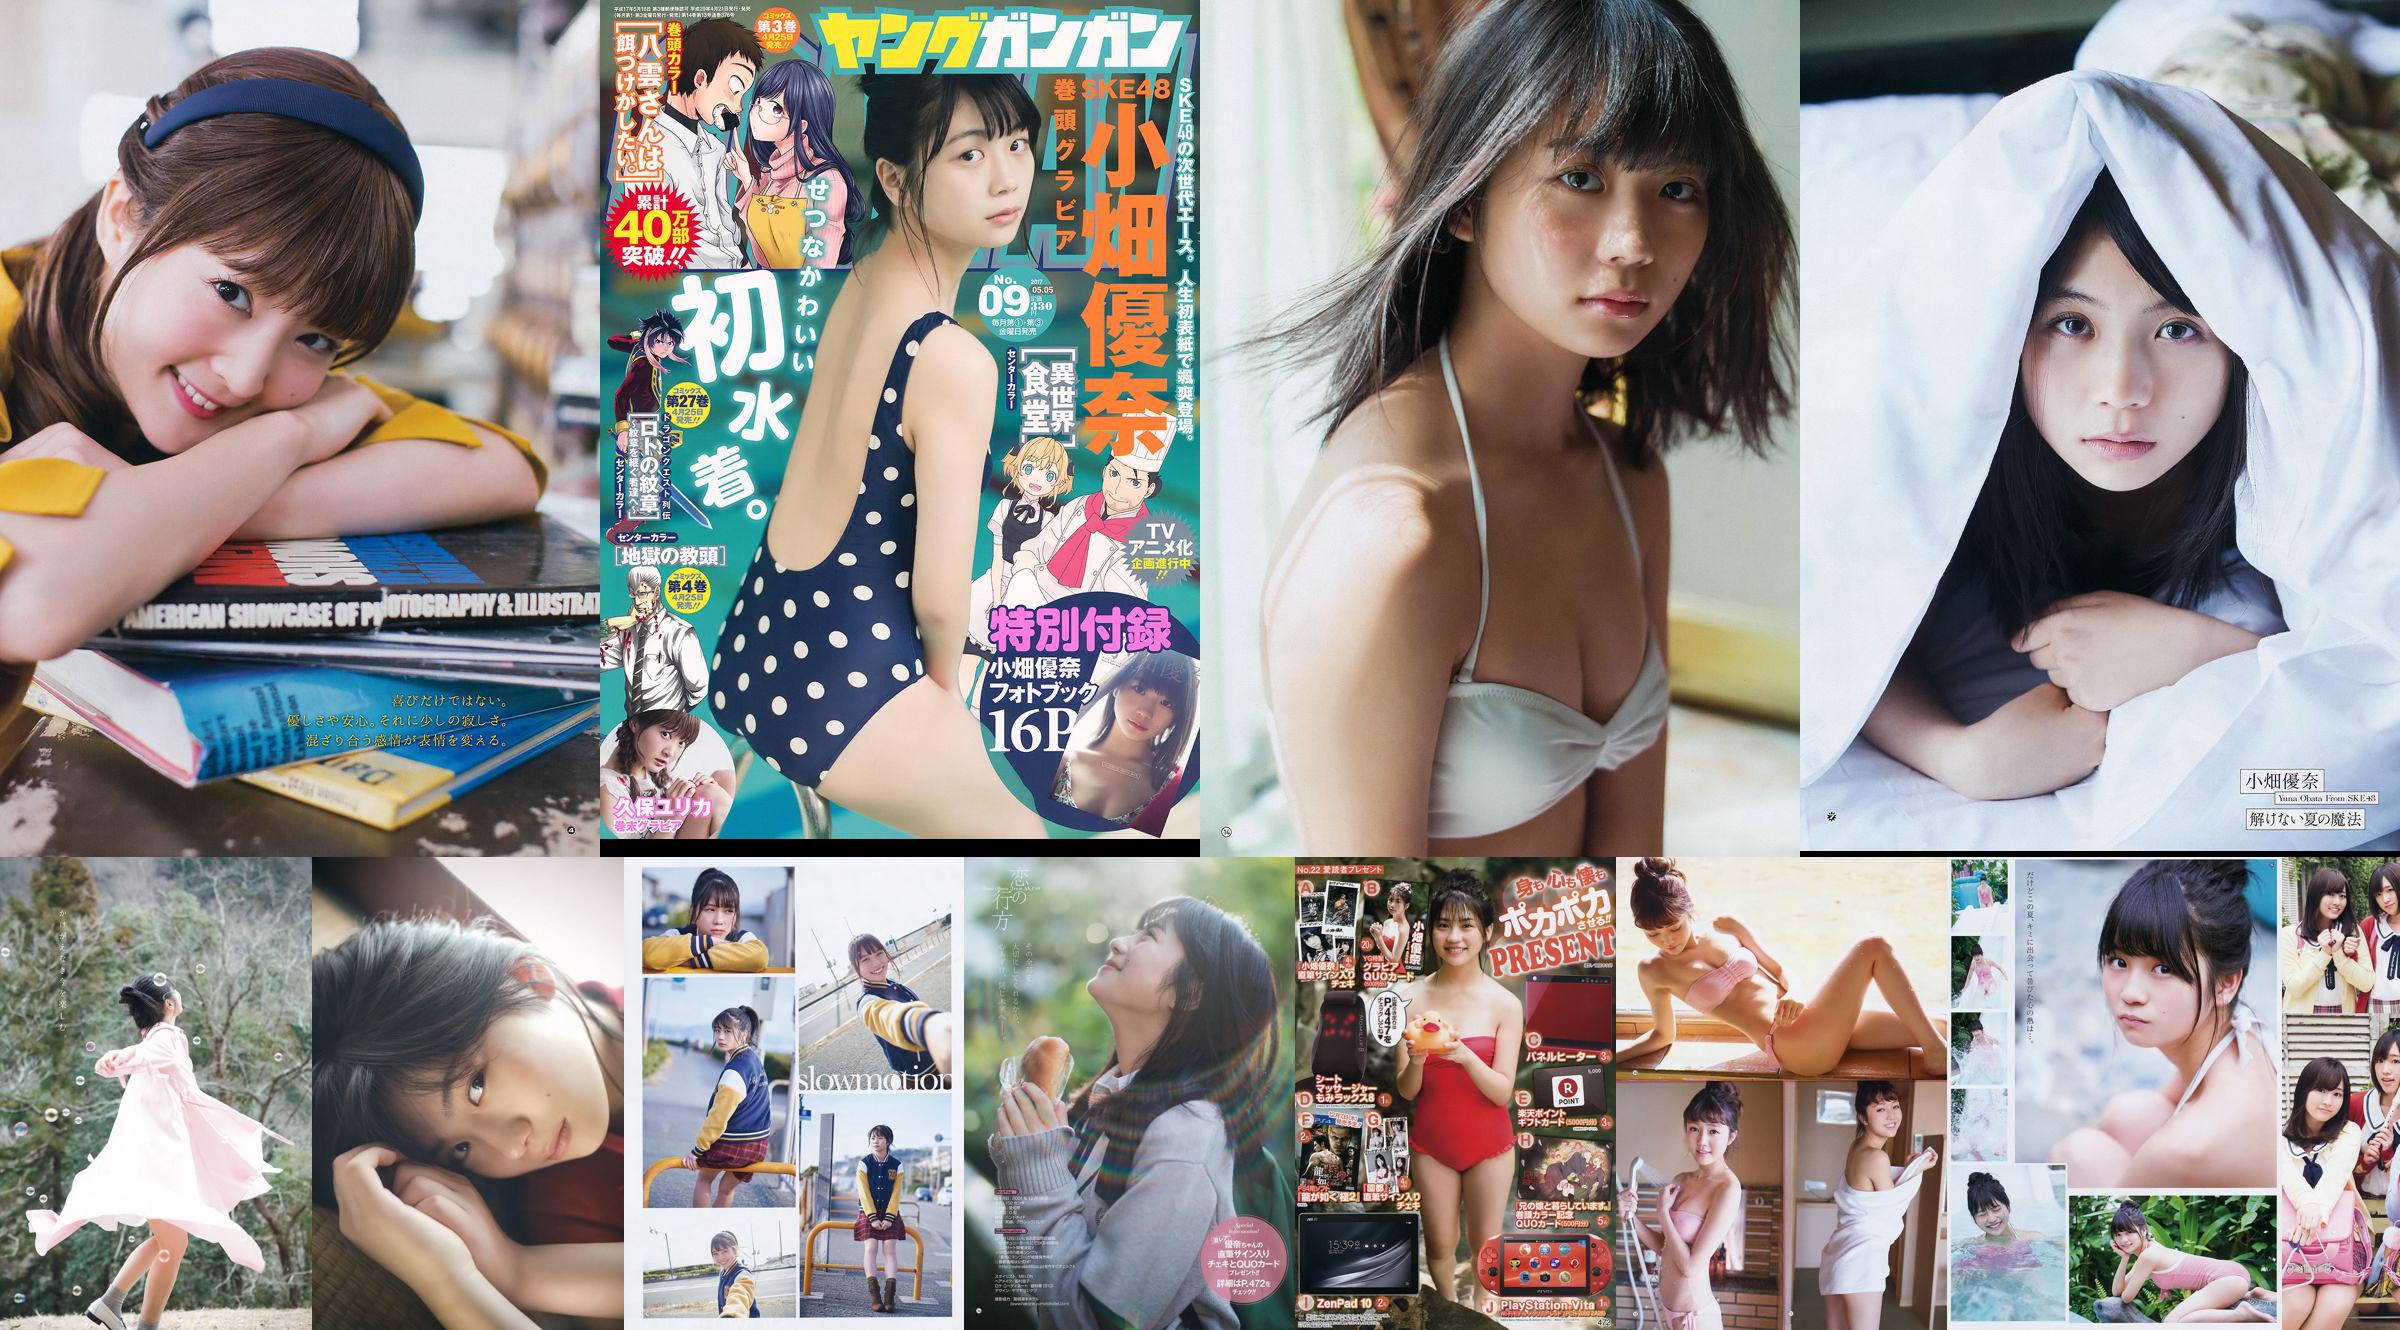 [Young Gangan] Yuna Obata Mina Oba Yume Hayashi 2018 No.12 Photo Magazine No.f27e68 หน้า 1